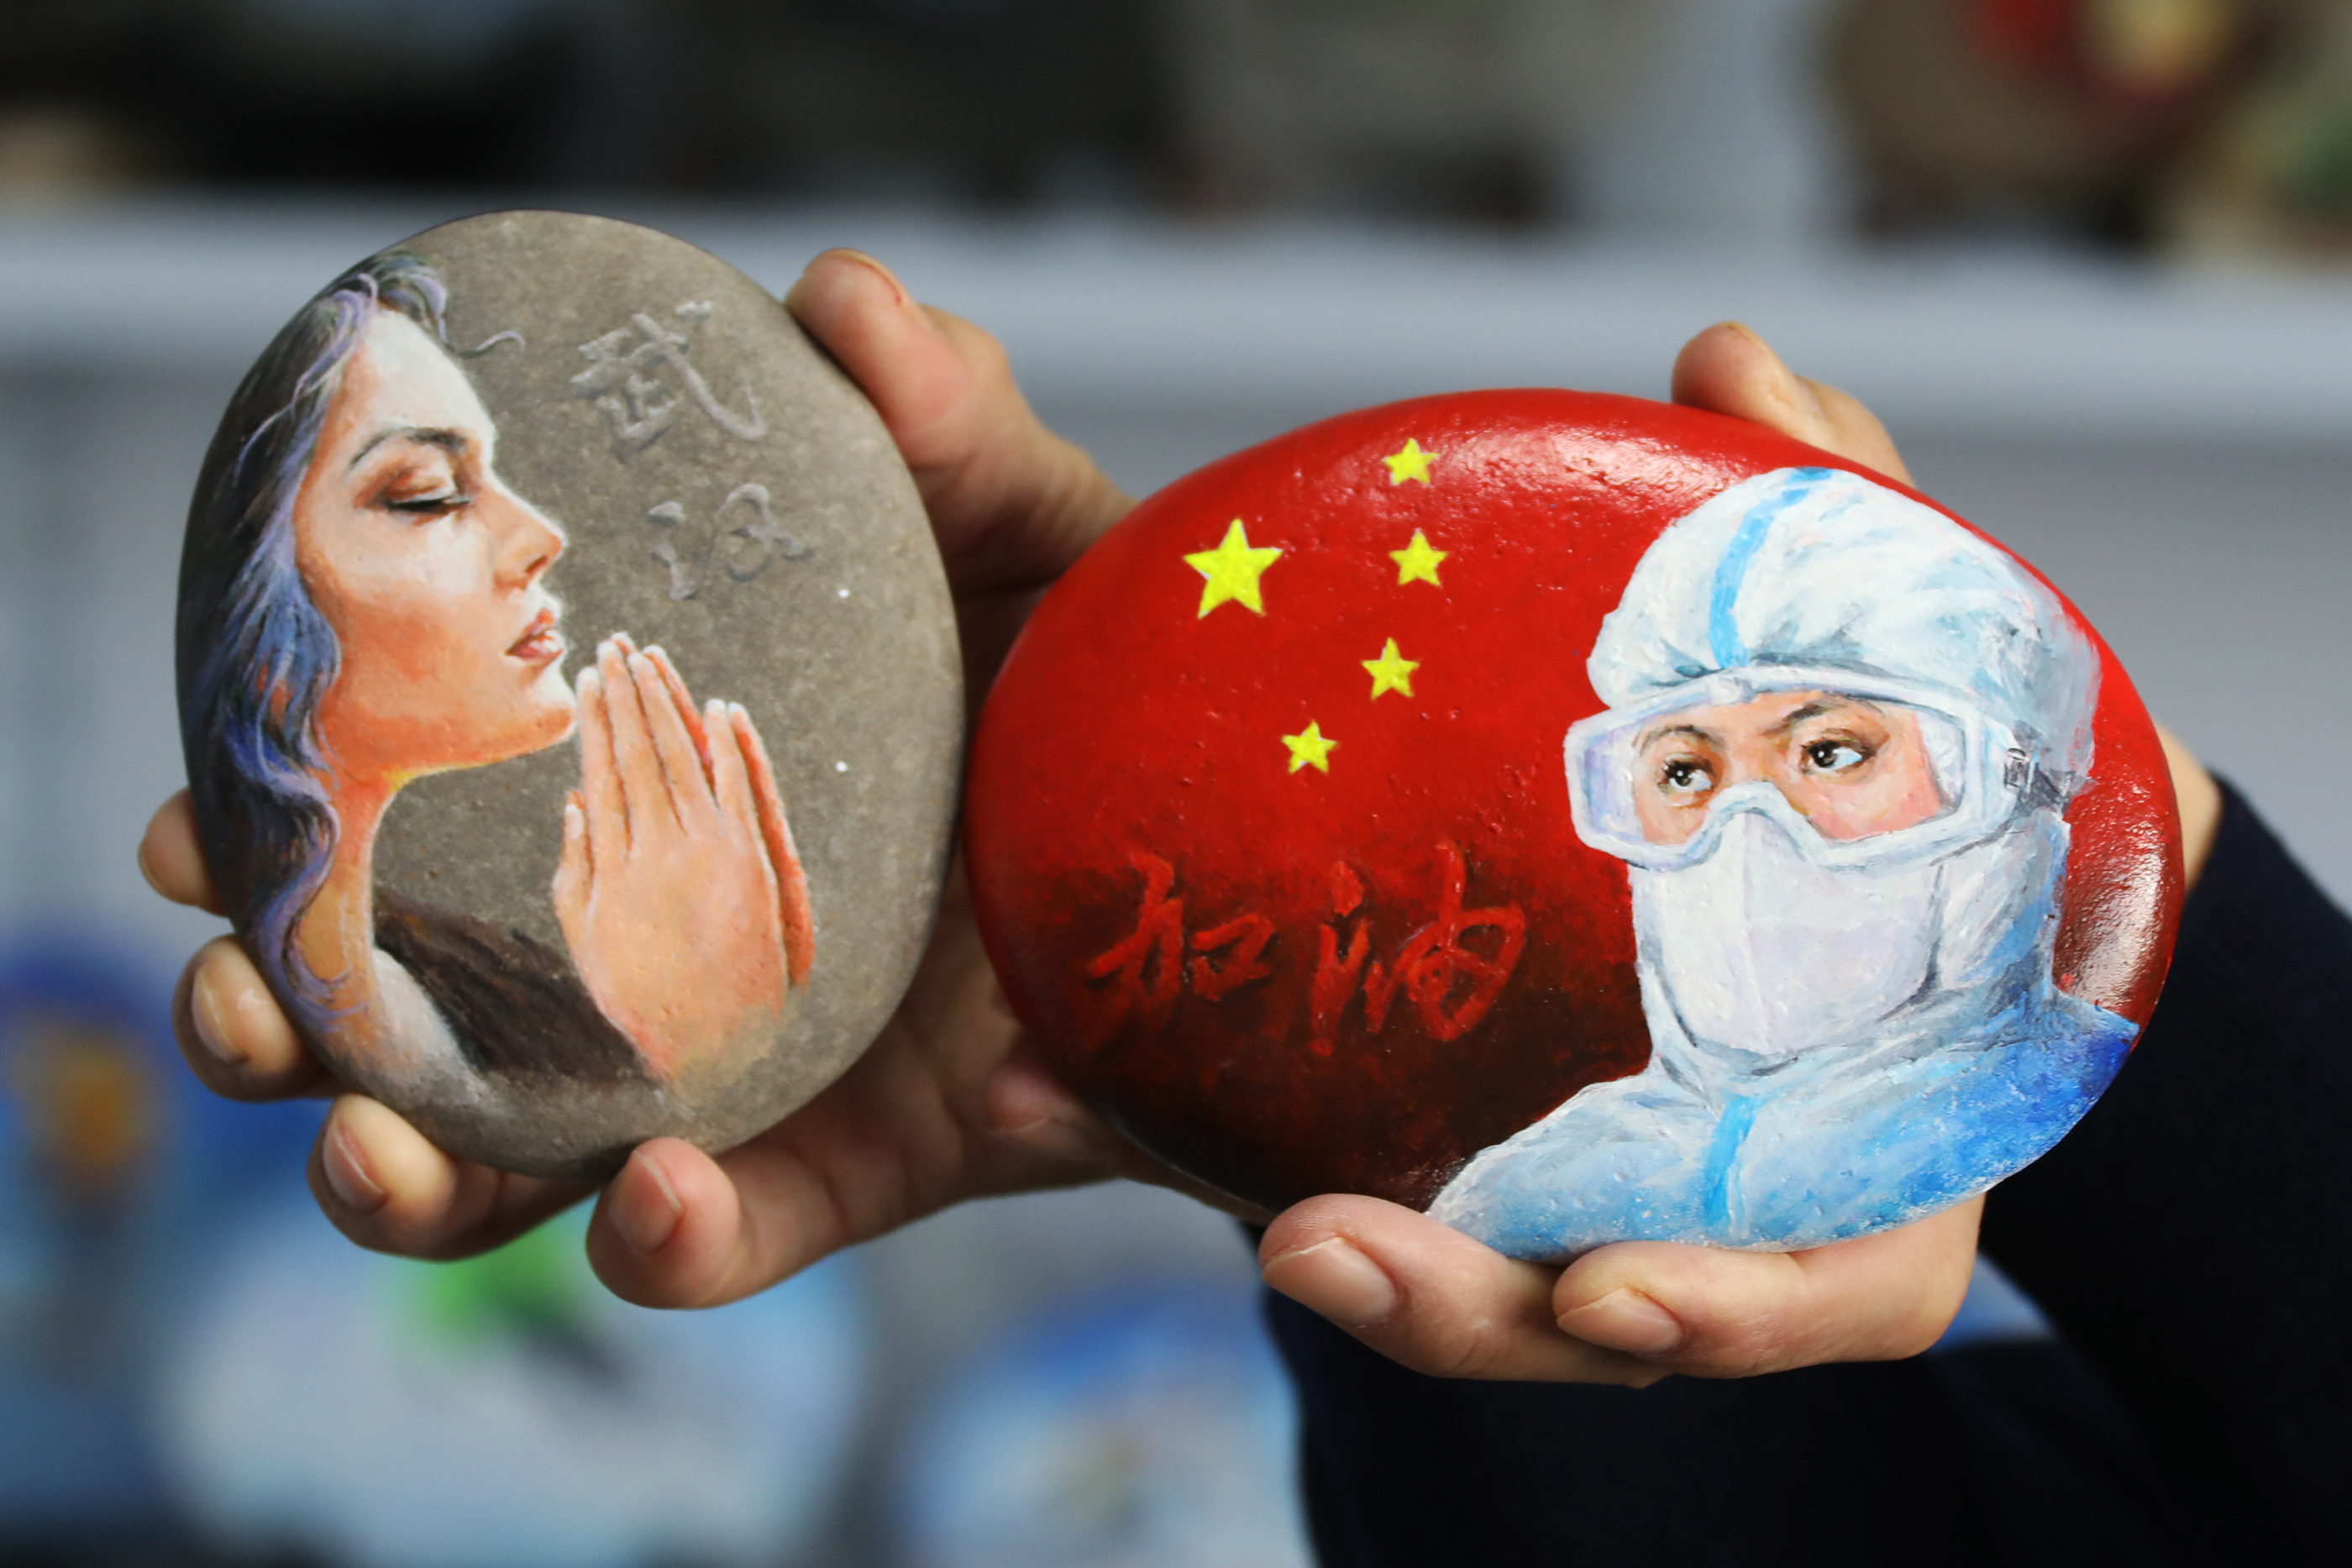 22月9日,陈智旺展示"疫情防控"主题系列石头画.